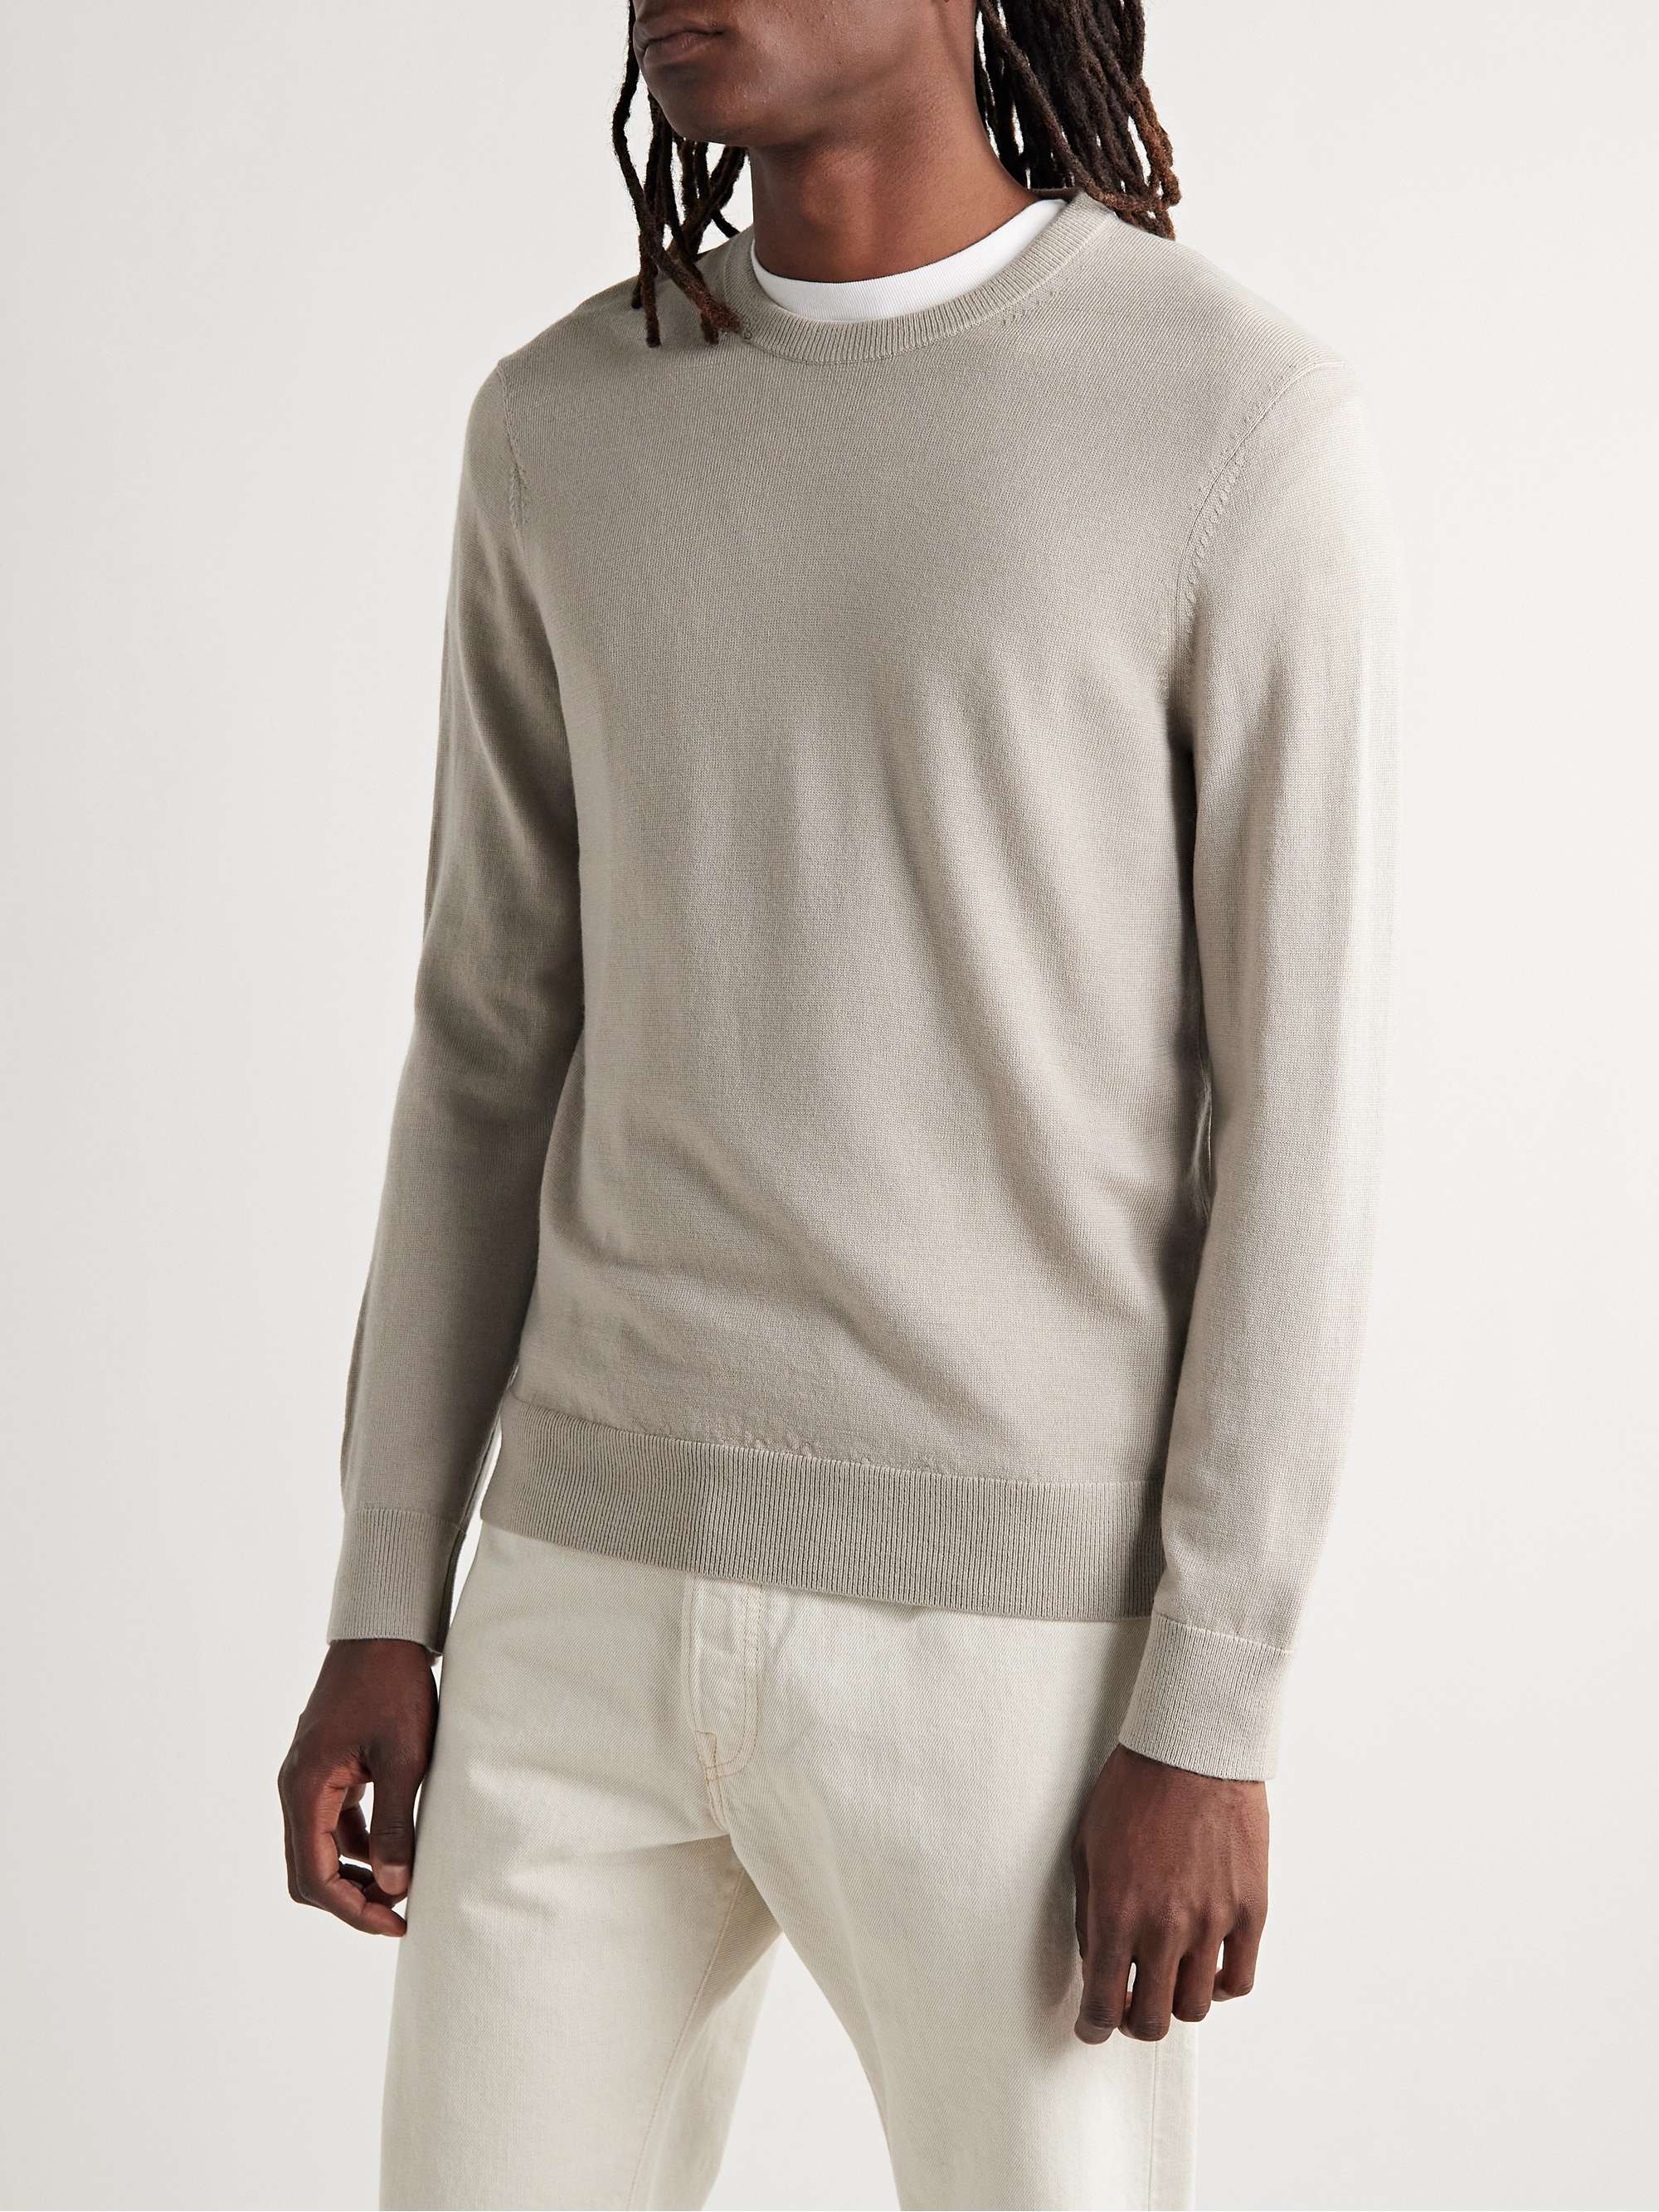 CLUB MONACO Wool Sweater for Men | MR PORTER